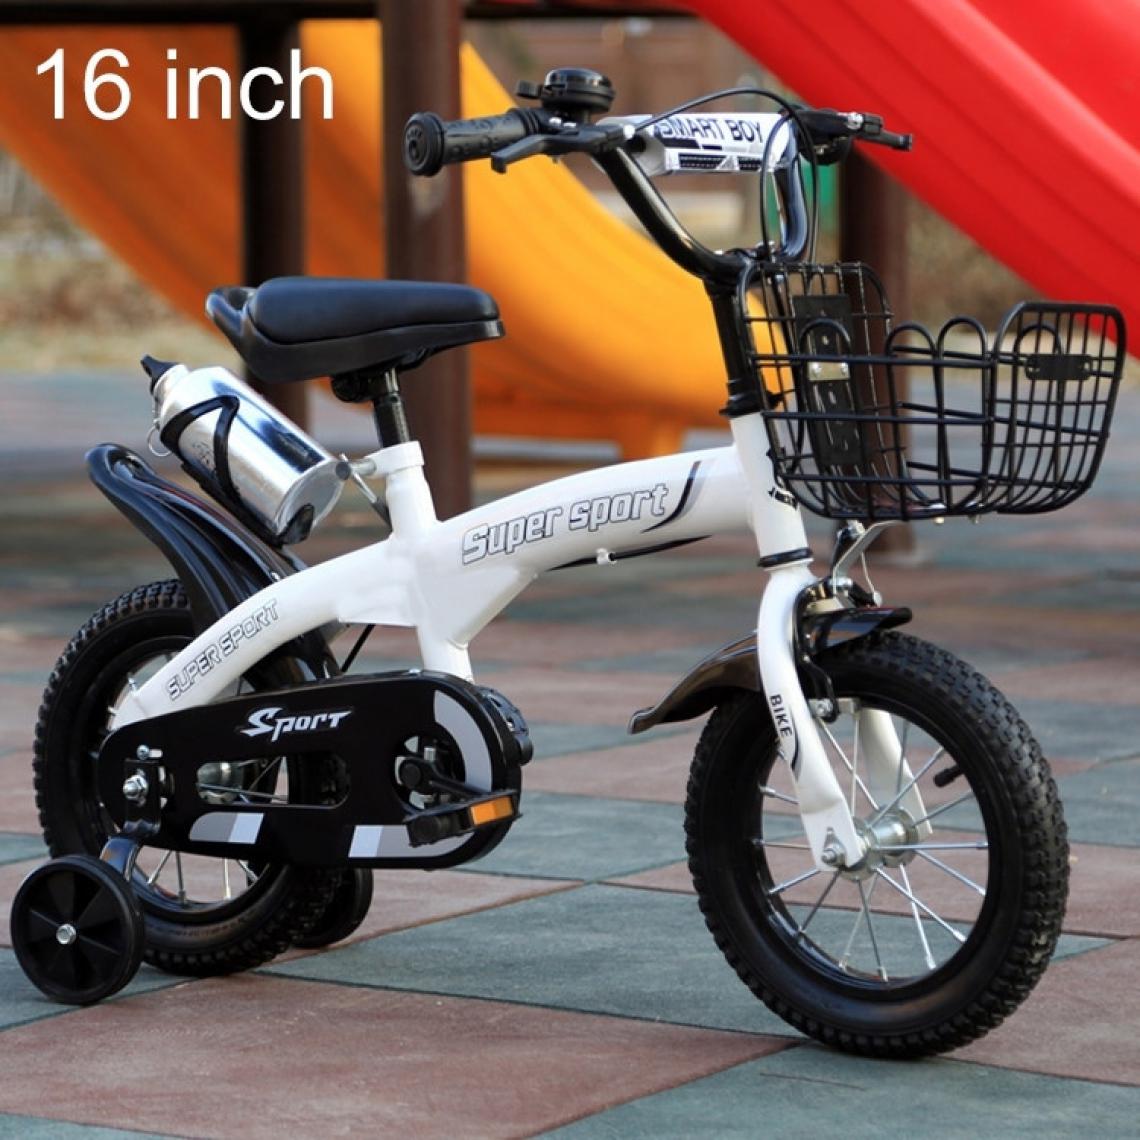 Wewoo - Jouet pour 5188 Vélo à pédale avec cadre en acier à haute teneur carbone enfantsversion sport 16 poucesavec panier avant et clochehauteur recommandée 108-125 cm Blanc - Jeux d'éveil